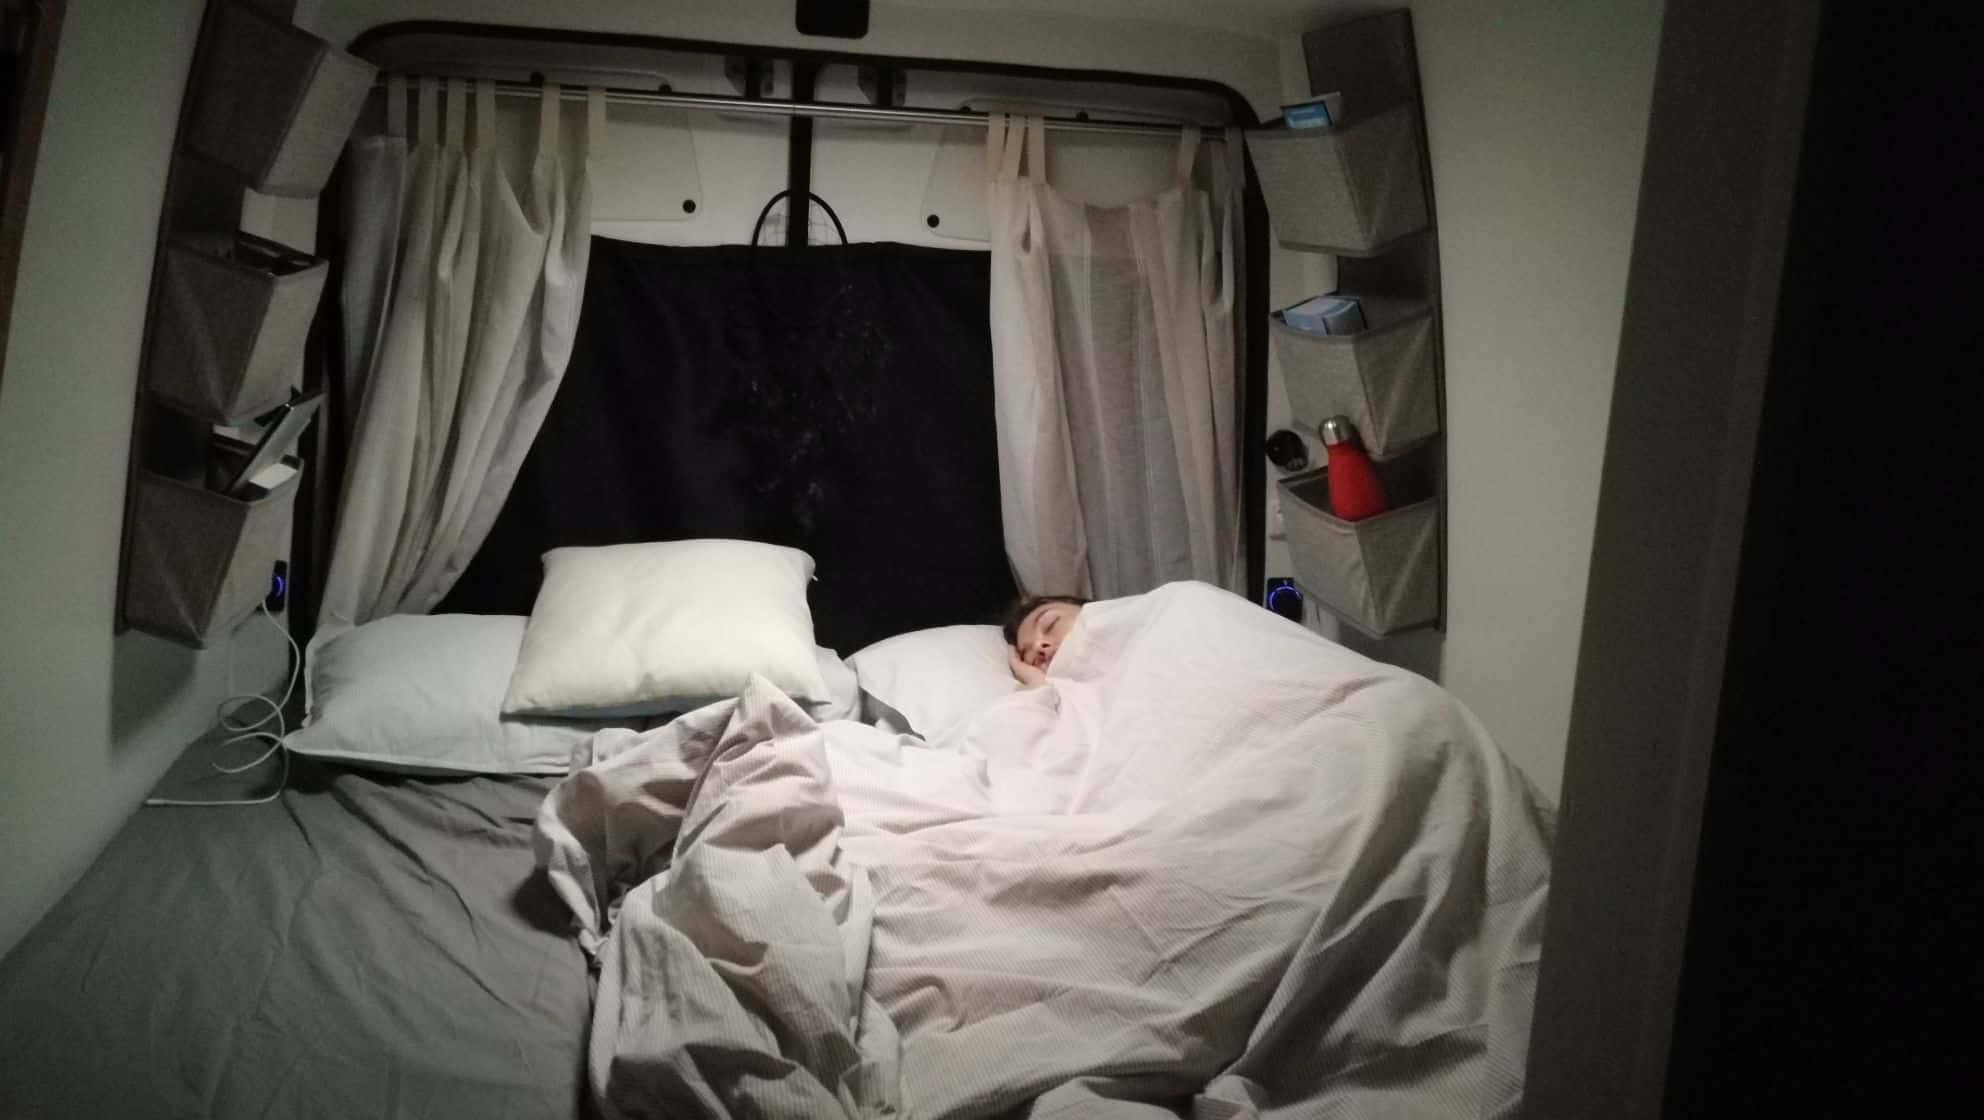 DIY camper bed proof isa bear van vanlife bed ideas